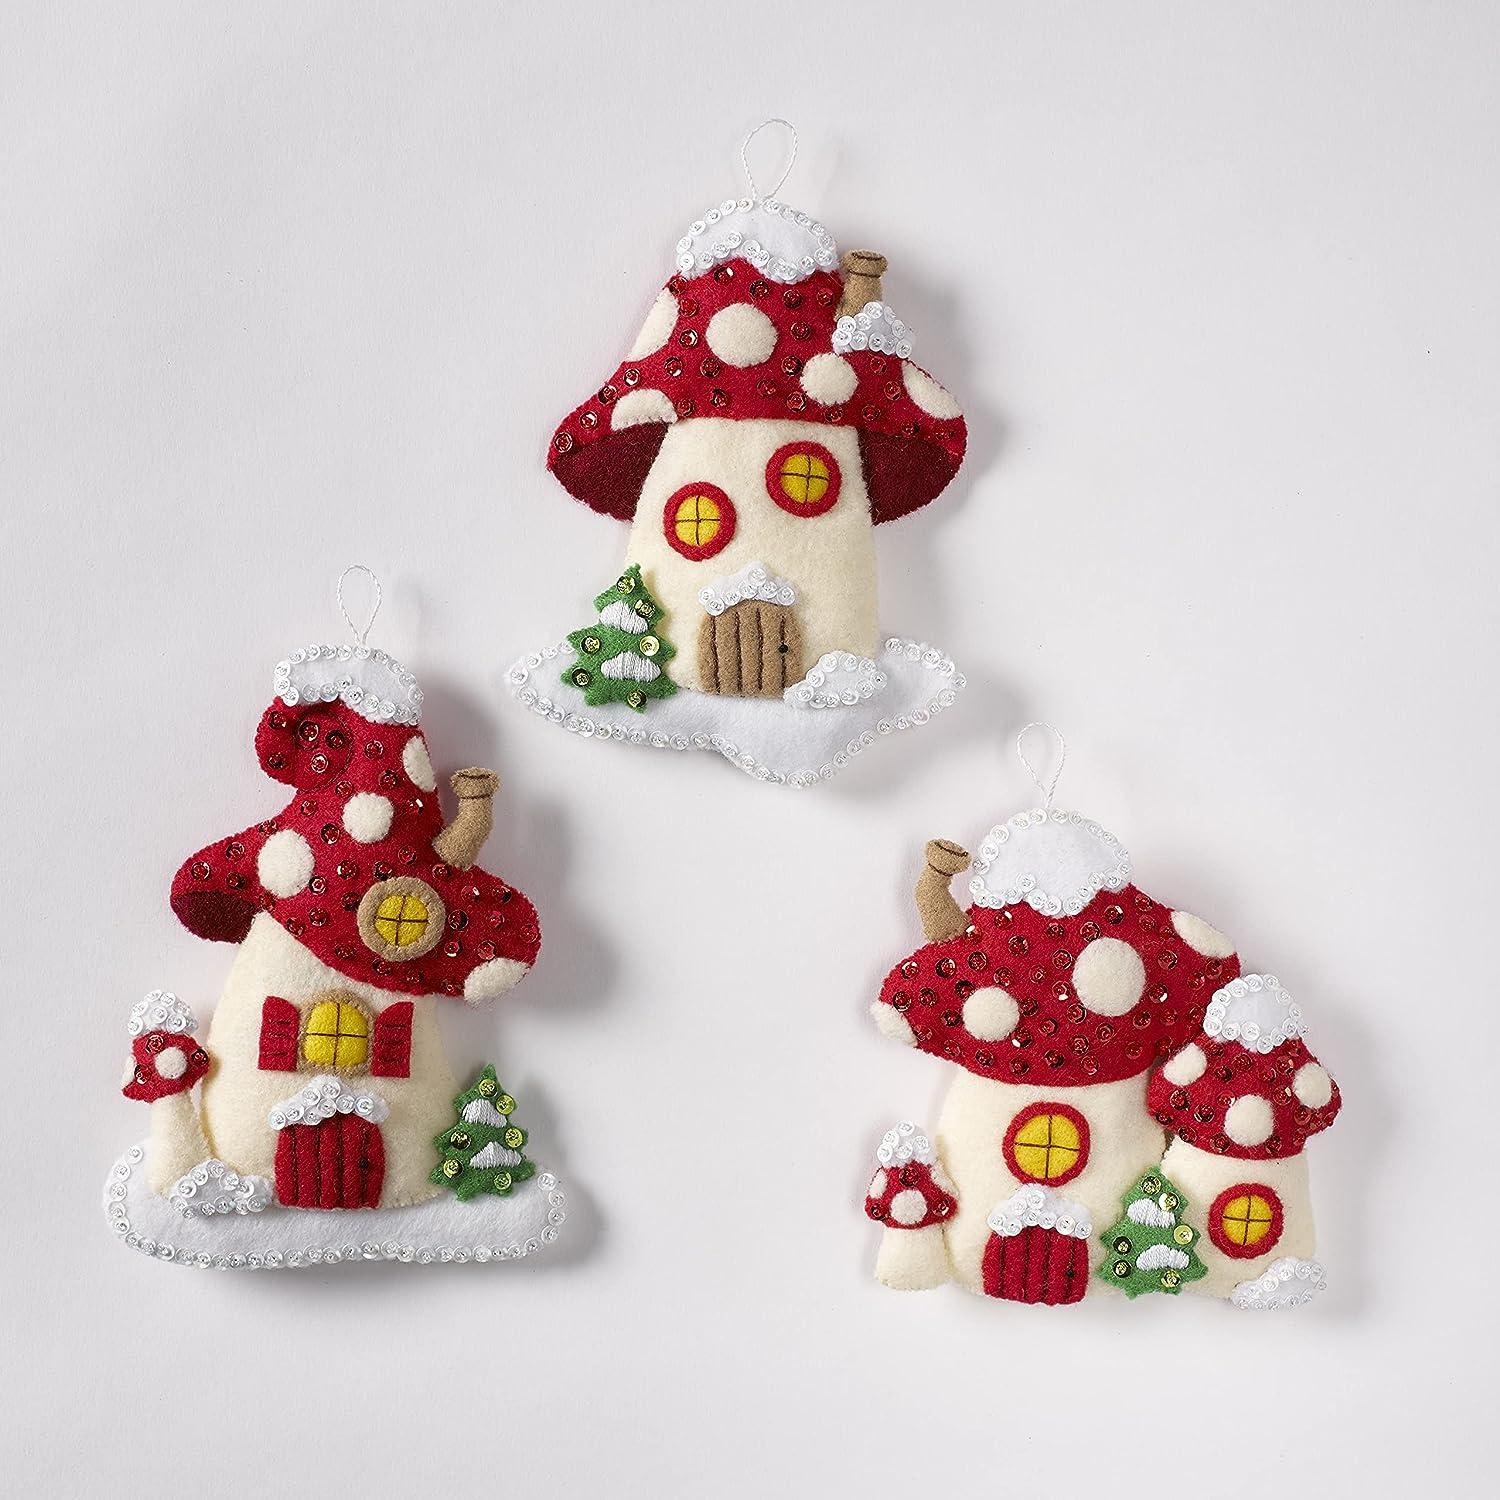 Felt Ornaments Applique Kit - Gingerbread Santa From Bucilla